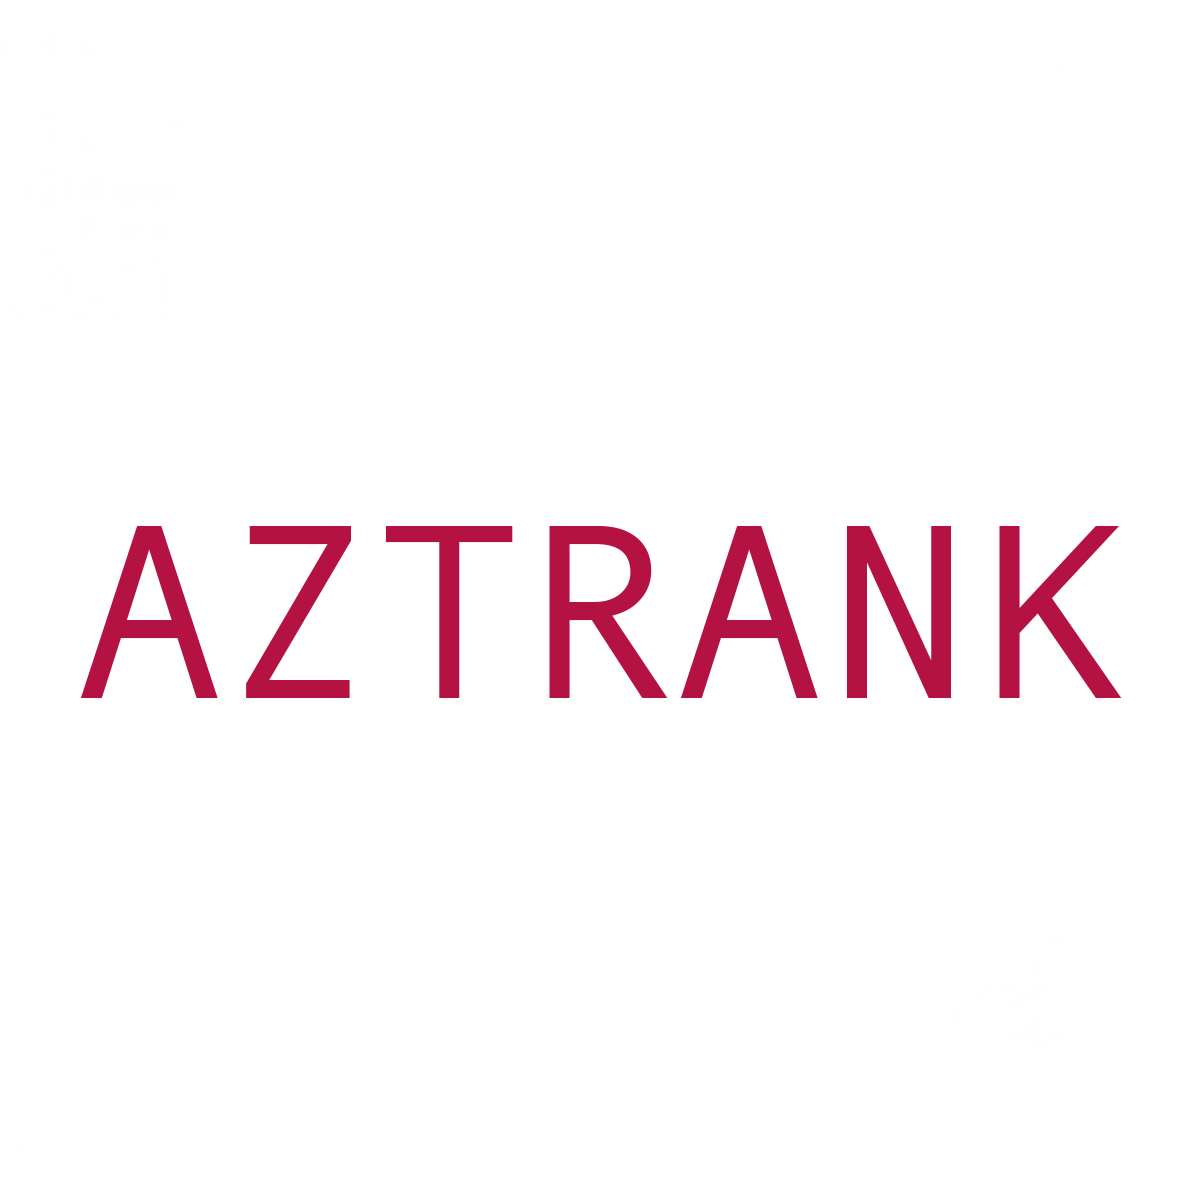 Aztrank Unlock